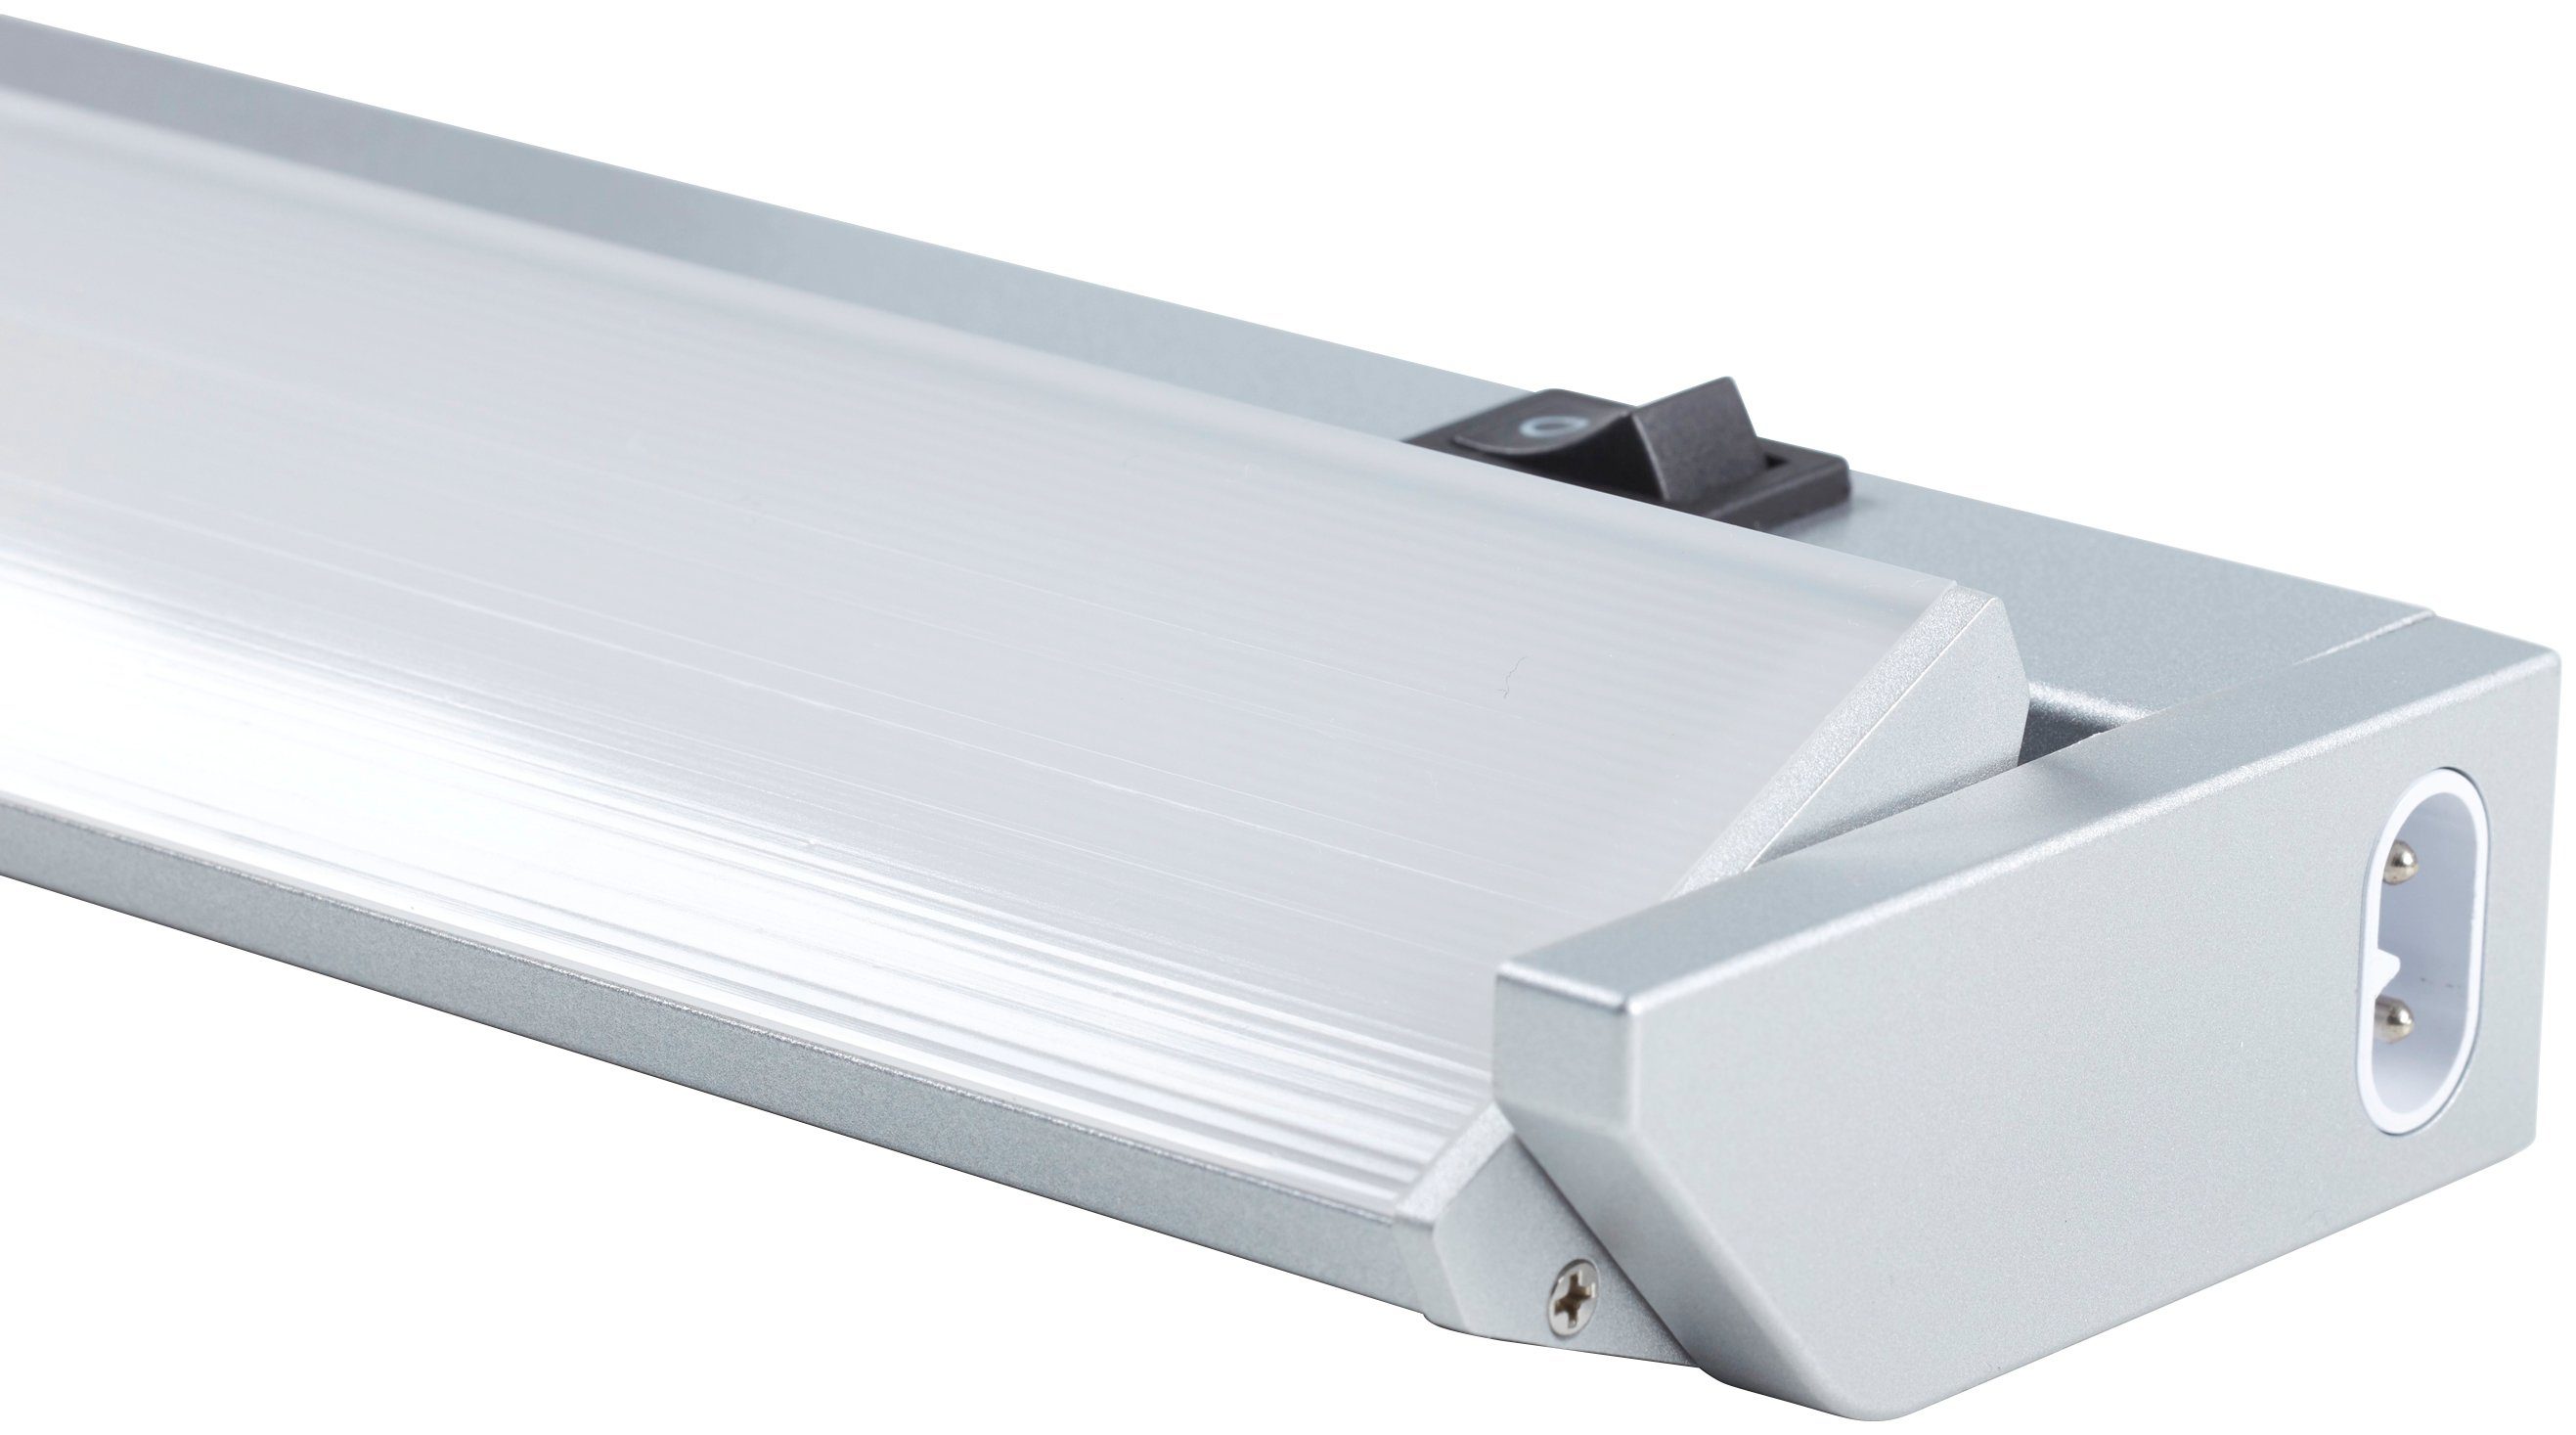 Loevschall LED Unterbauleuchte LED Striplight 911mm, Ein-/Ausschalter, LED  fest integriert, Neutralweiß, Hohe Lichtausbeute, Schwenkbar | Unterbauleuchten